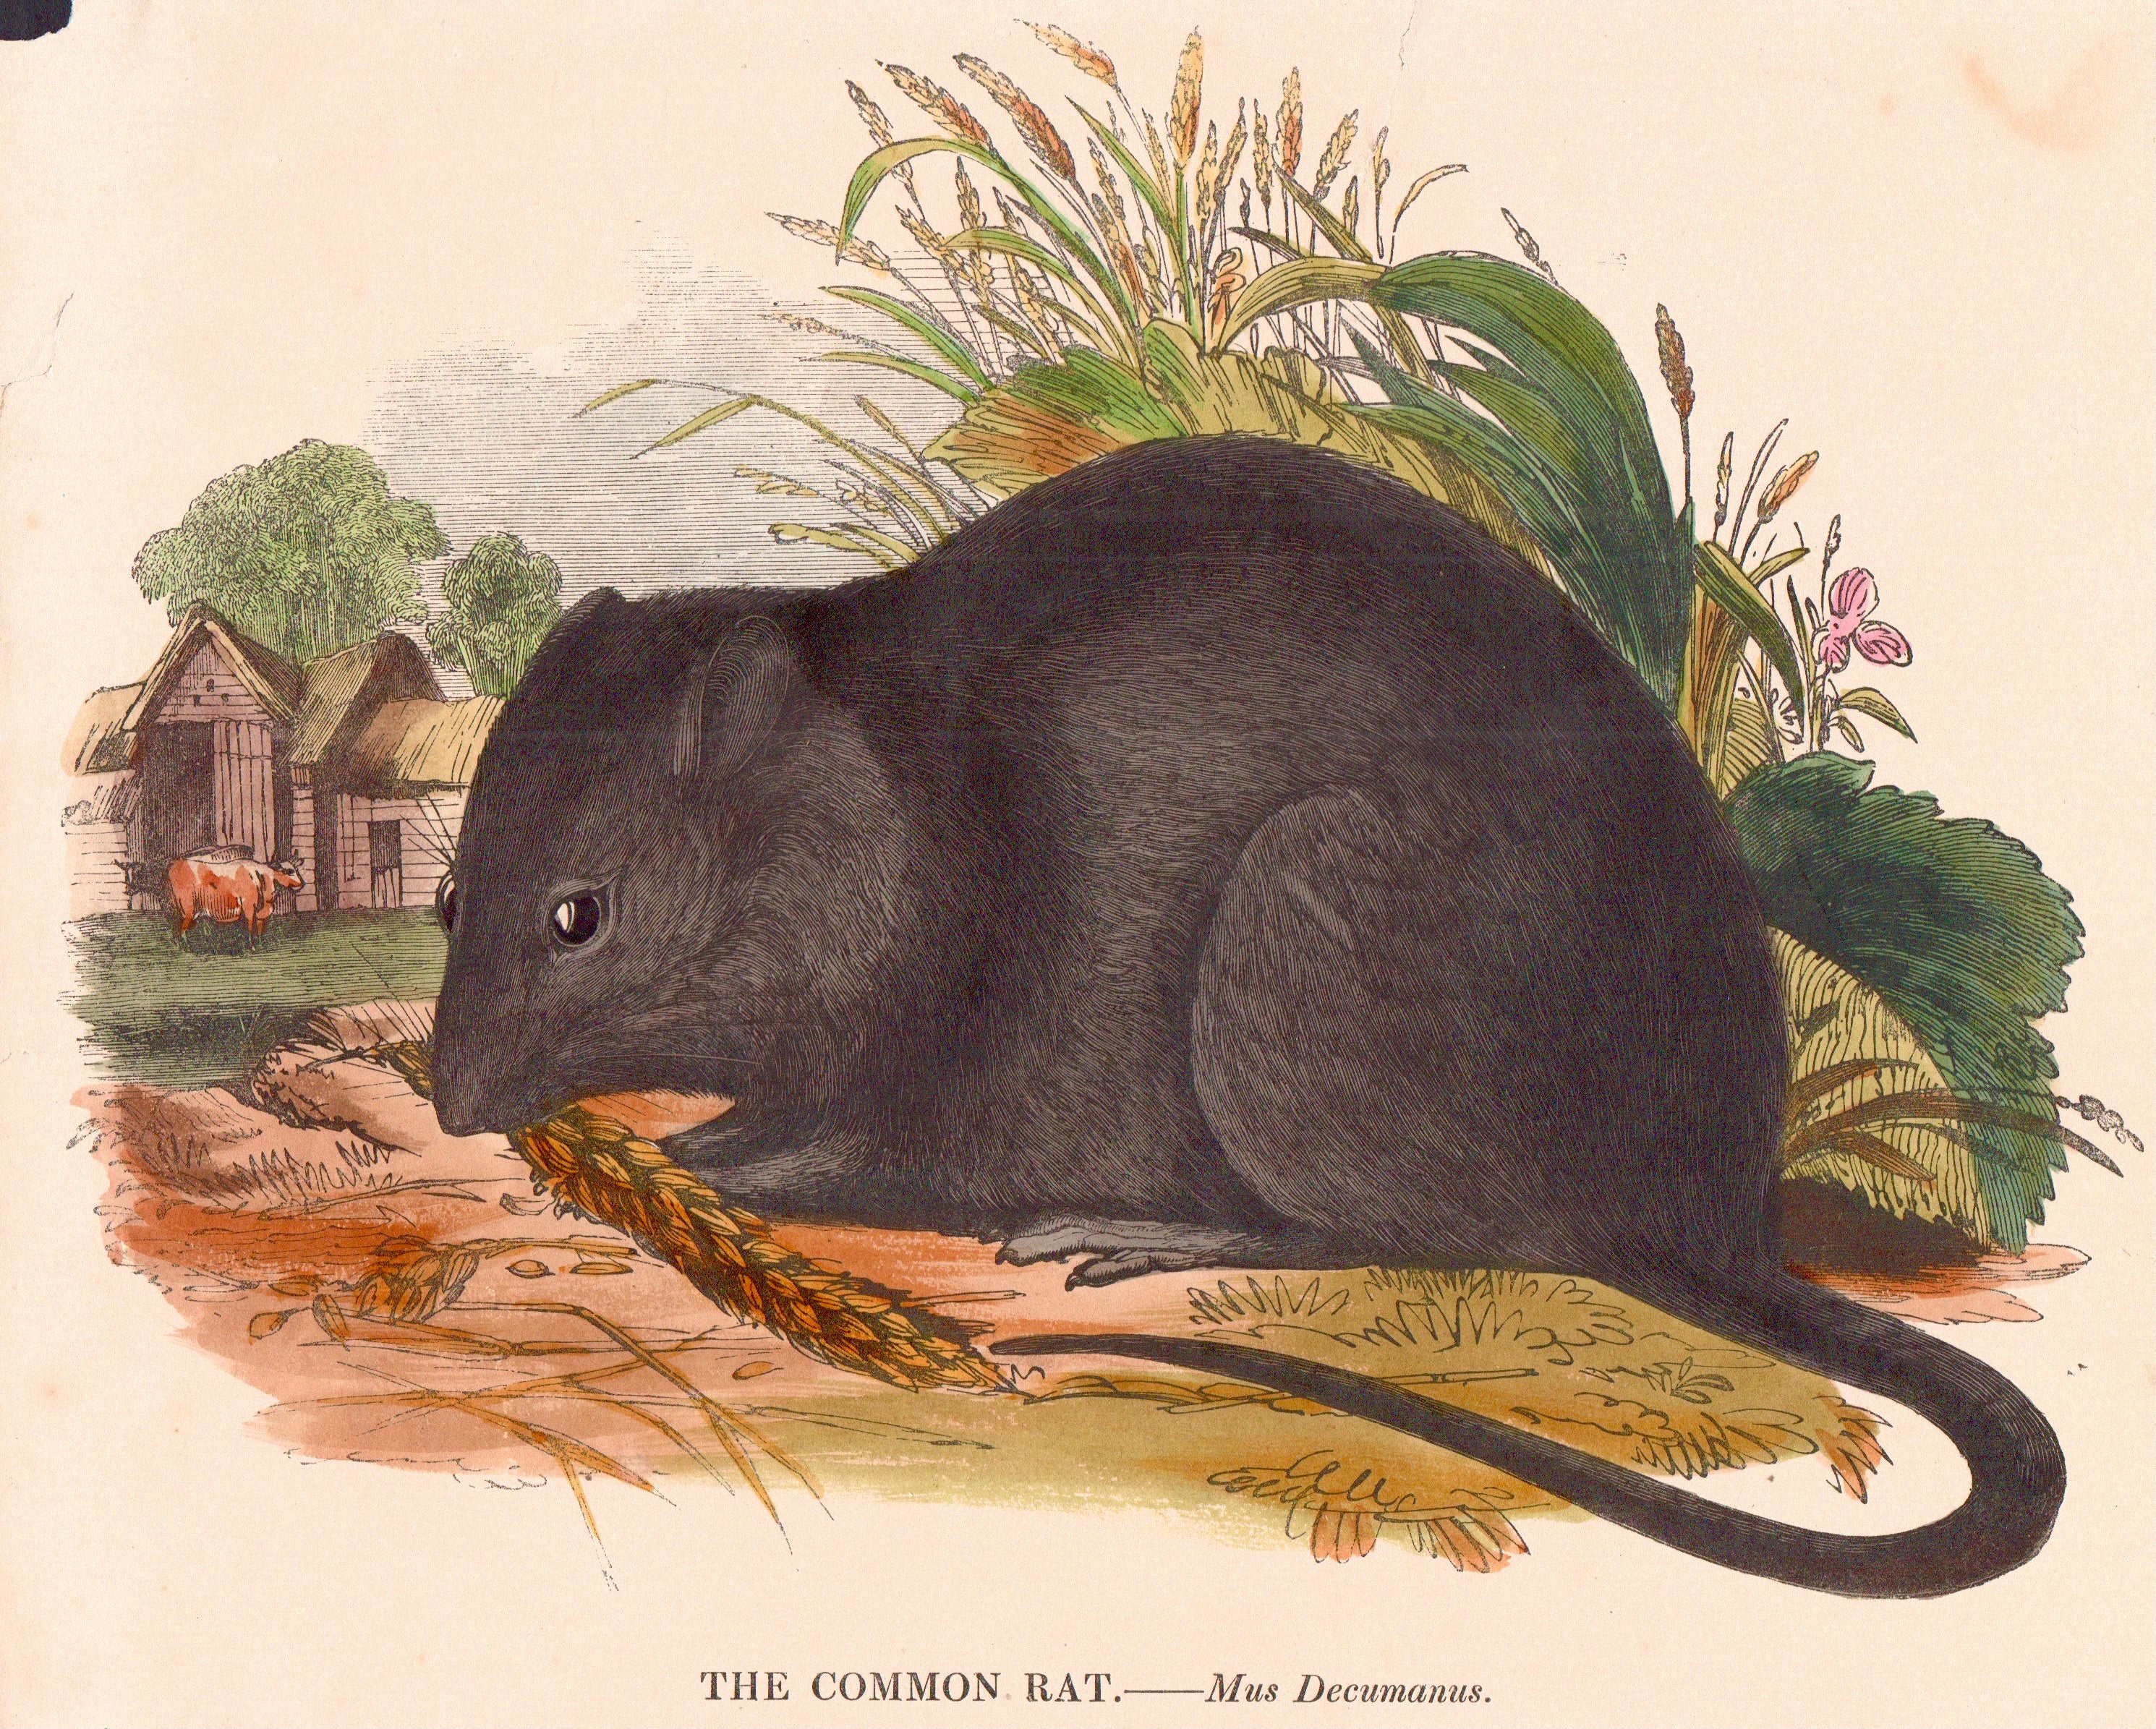 Common Rat - Mus Decumanus